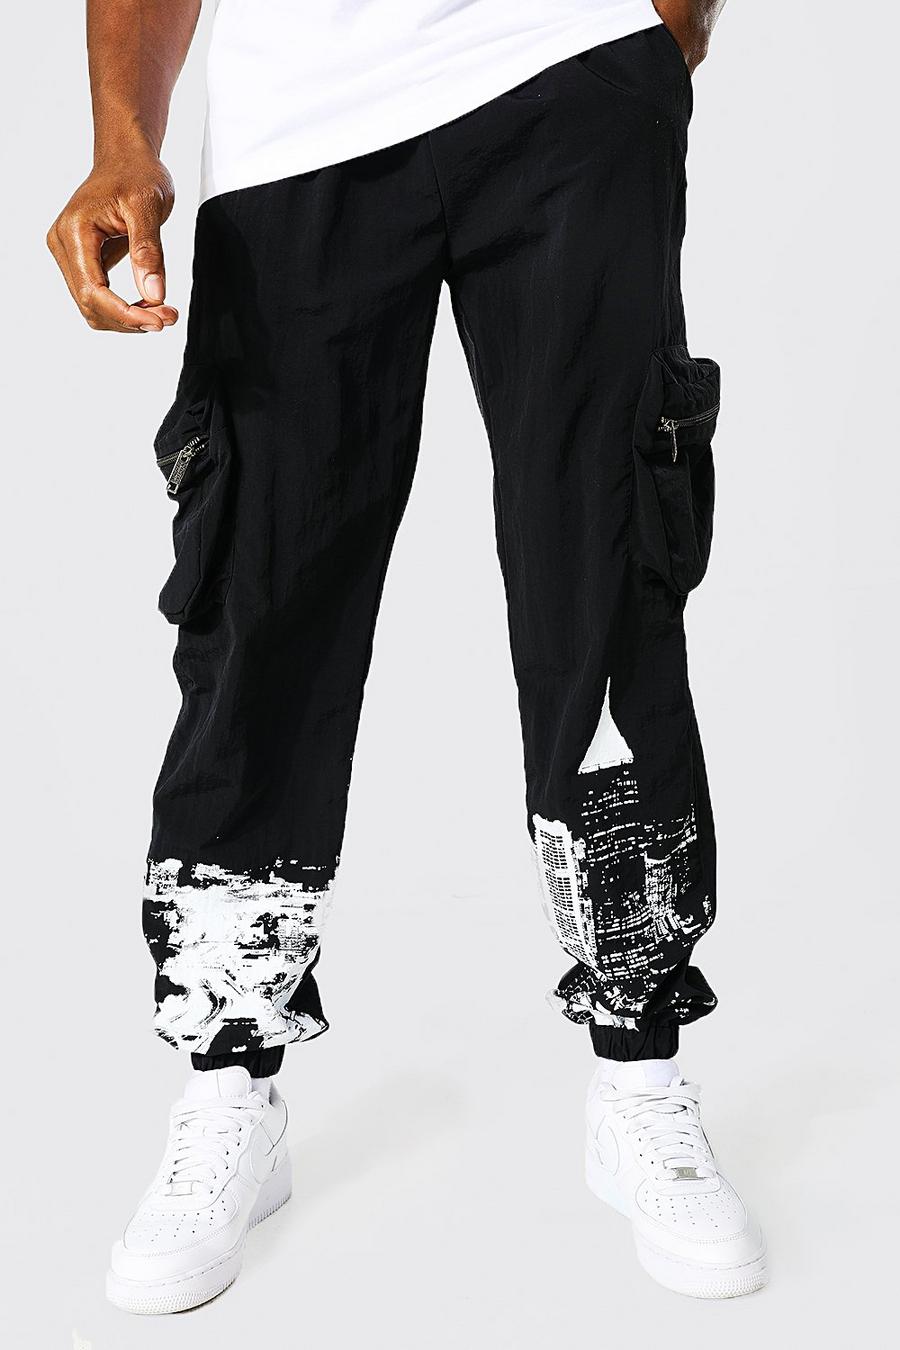 שחור מכנסי דגמ"ח עם שכבת בד פנימית, הדפס קו רקיע וכיתוב Official Man image number 1